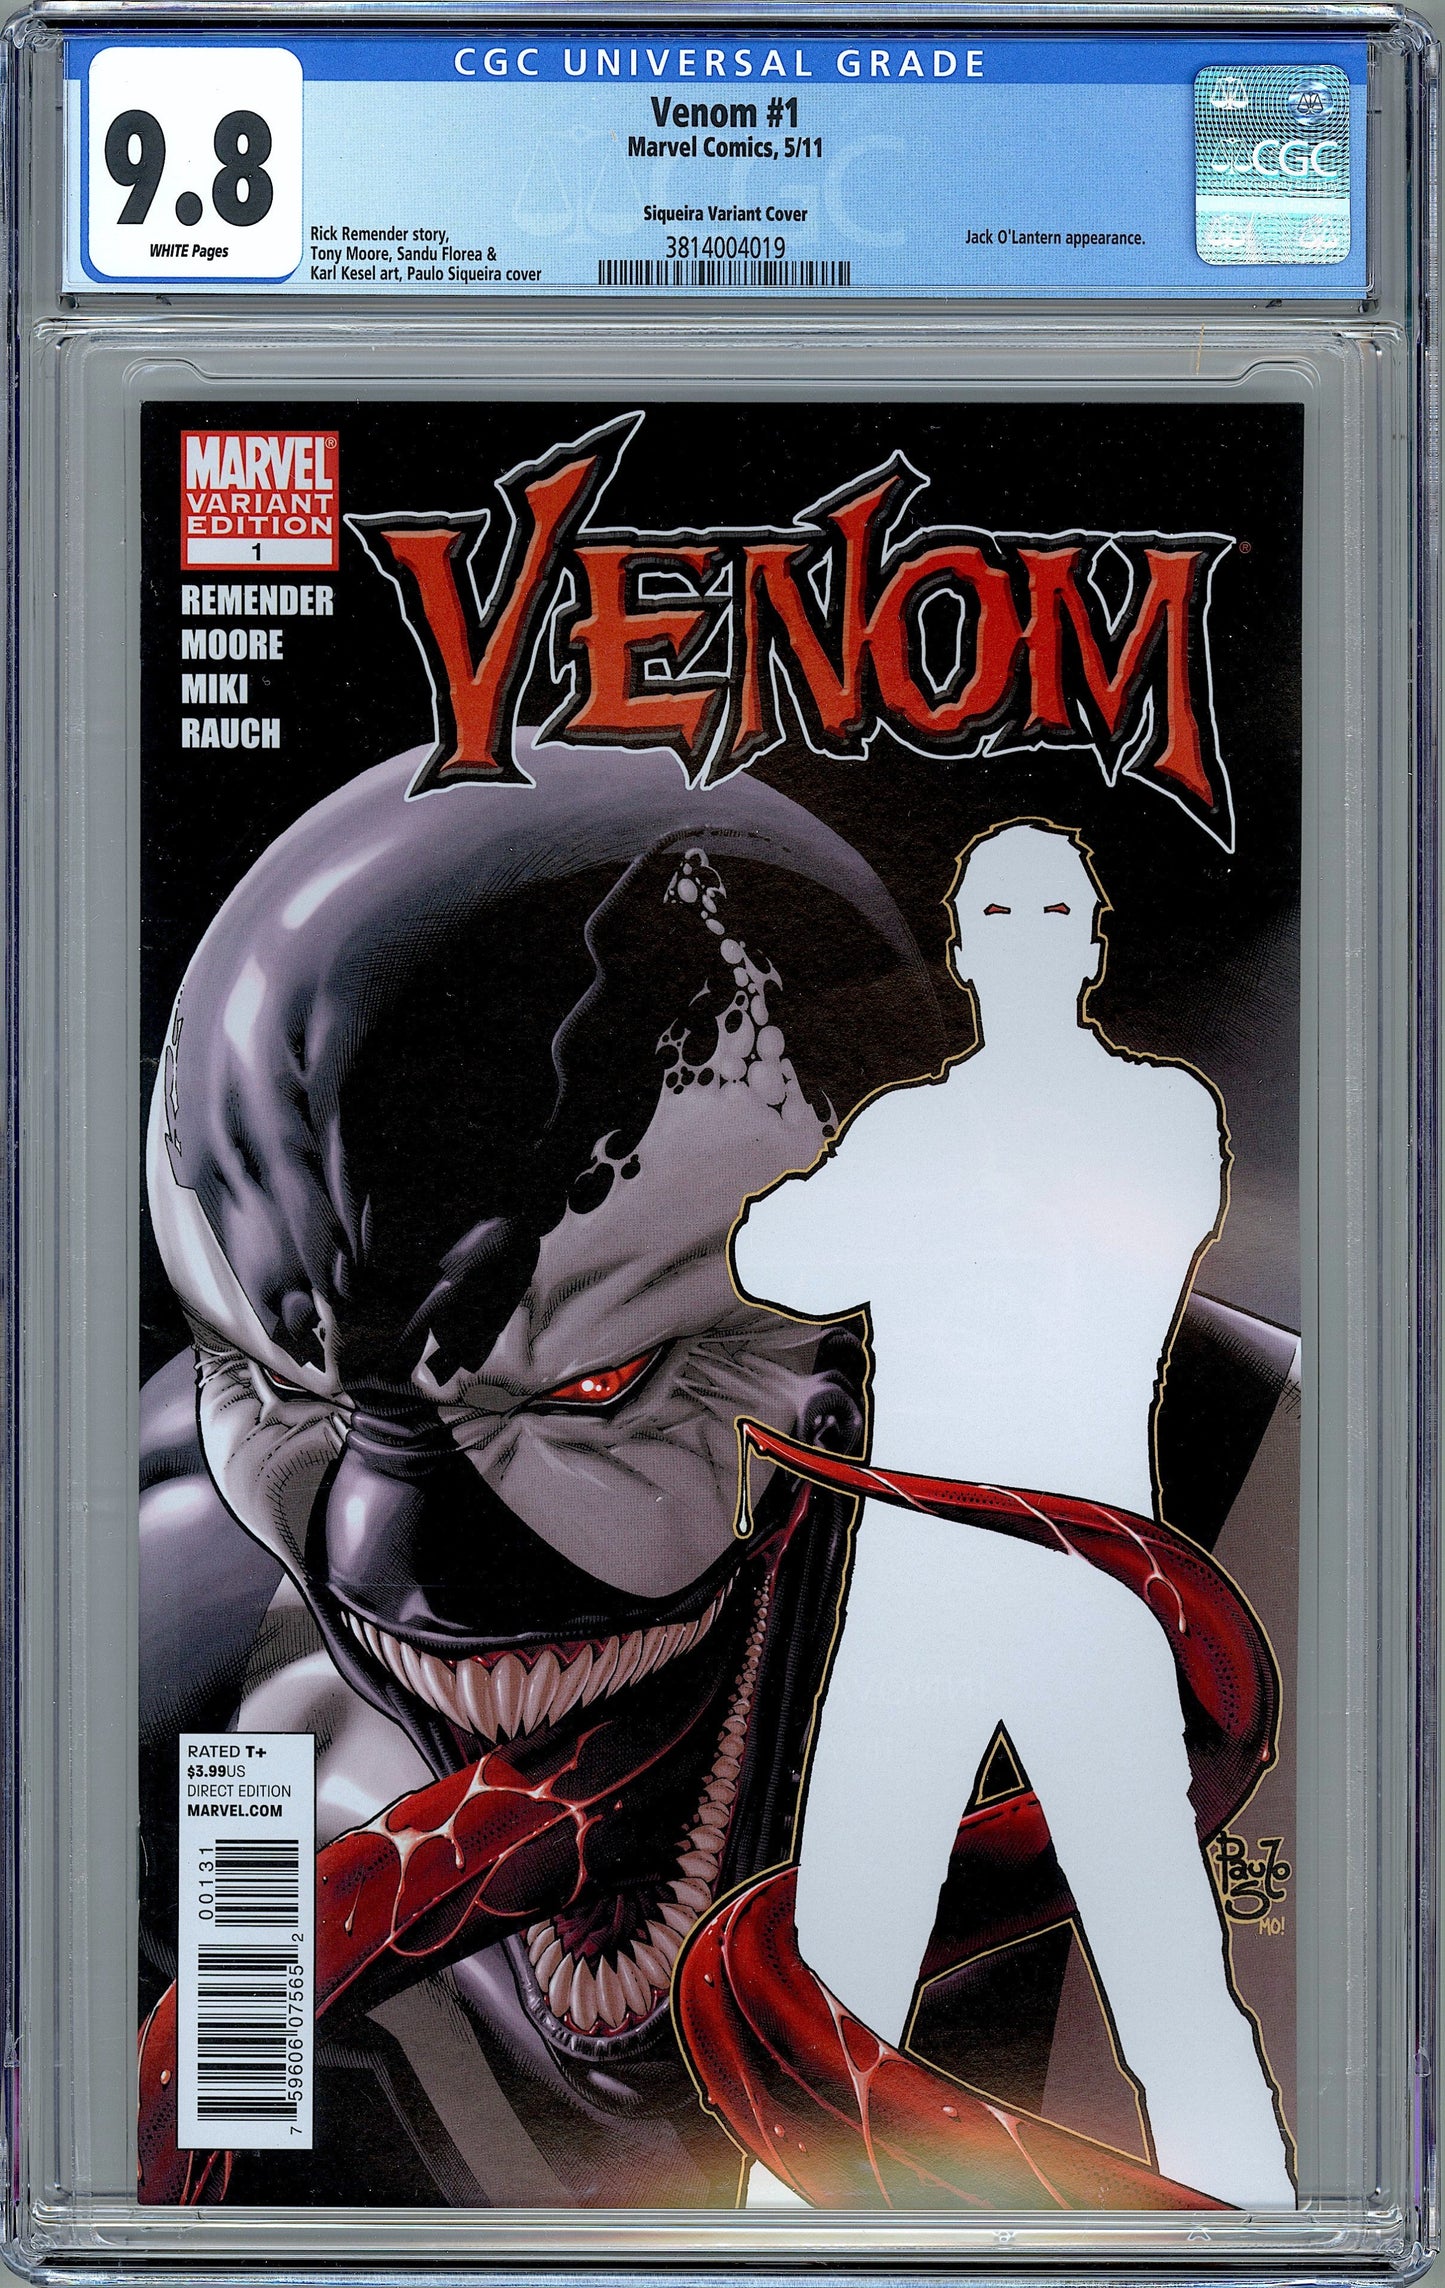 Venom #1. Agent Venom. Siqueria Variant Cover. CGC 9.8